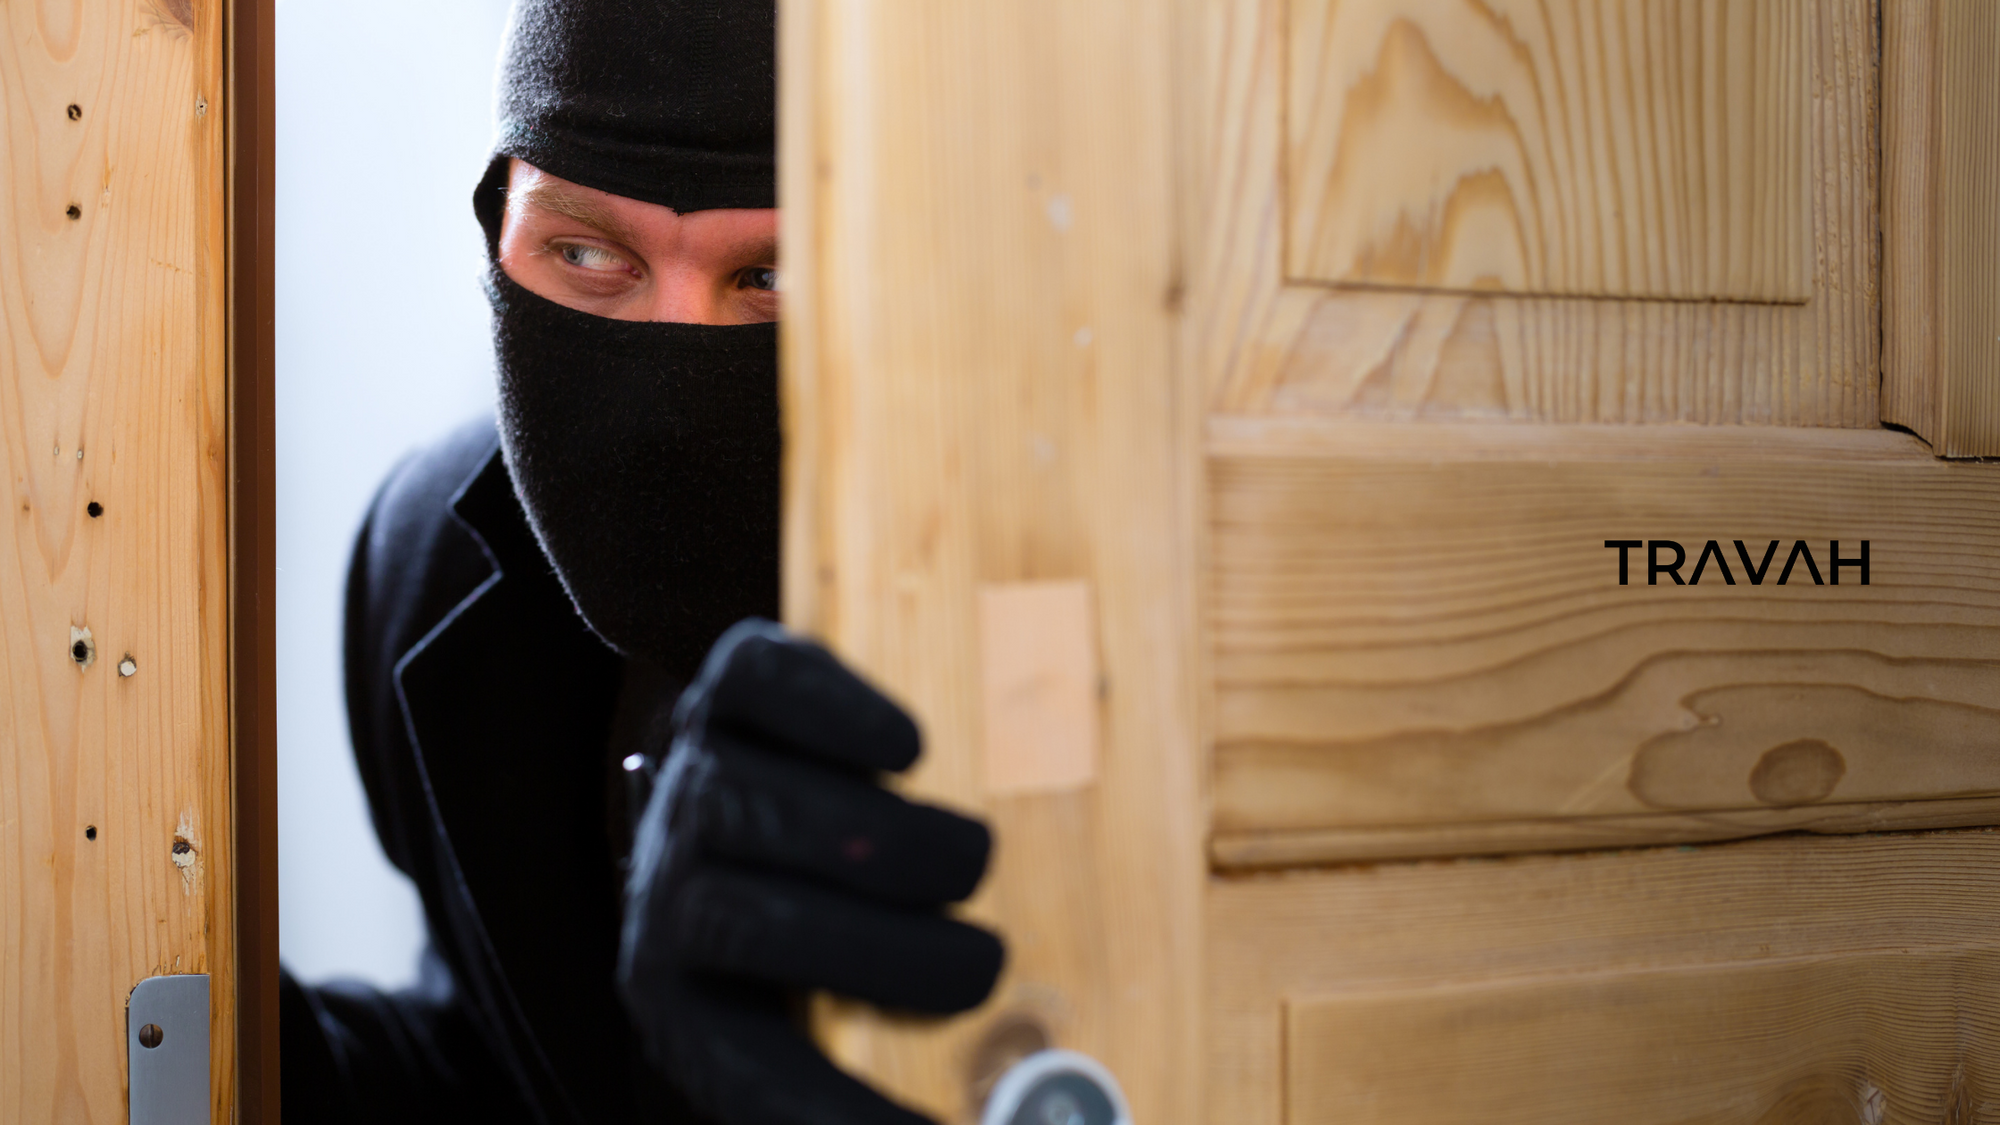 Burglar opening door